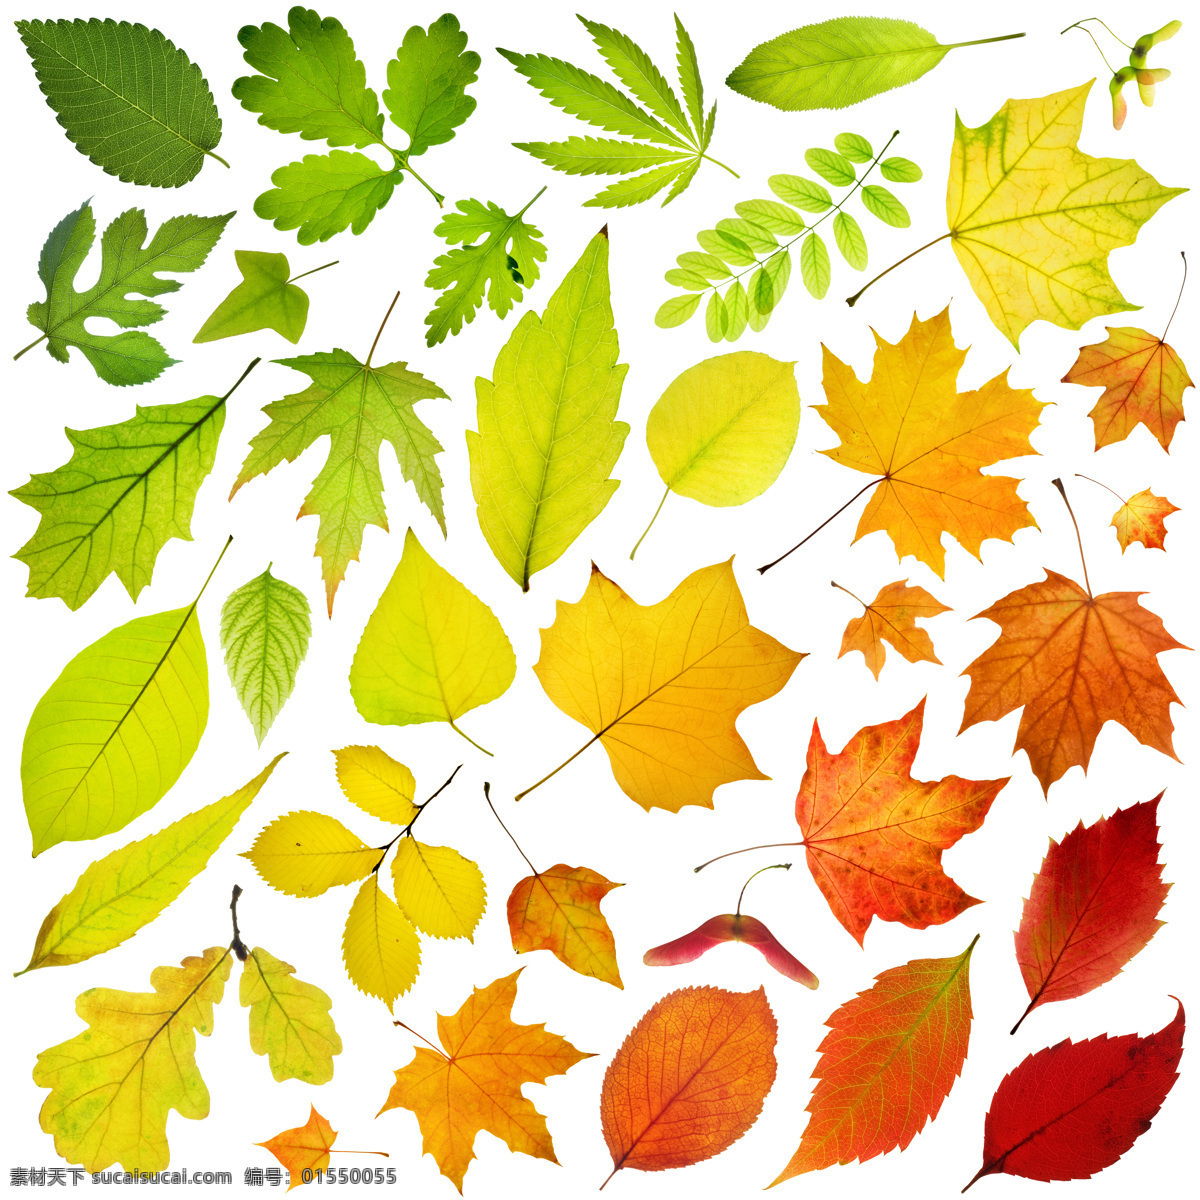 各种 树叶 红叶 绿叶 秋叶 各种树叶 枫叶 银杏叶 花草树木 生物世界 矢量素材